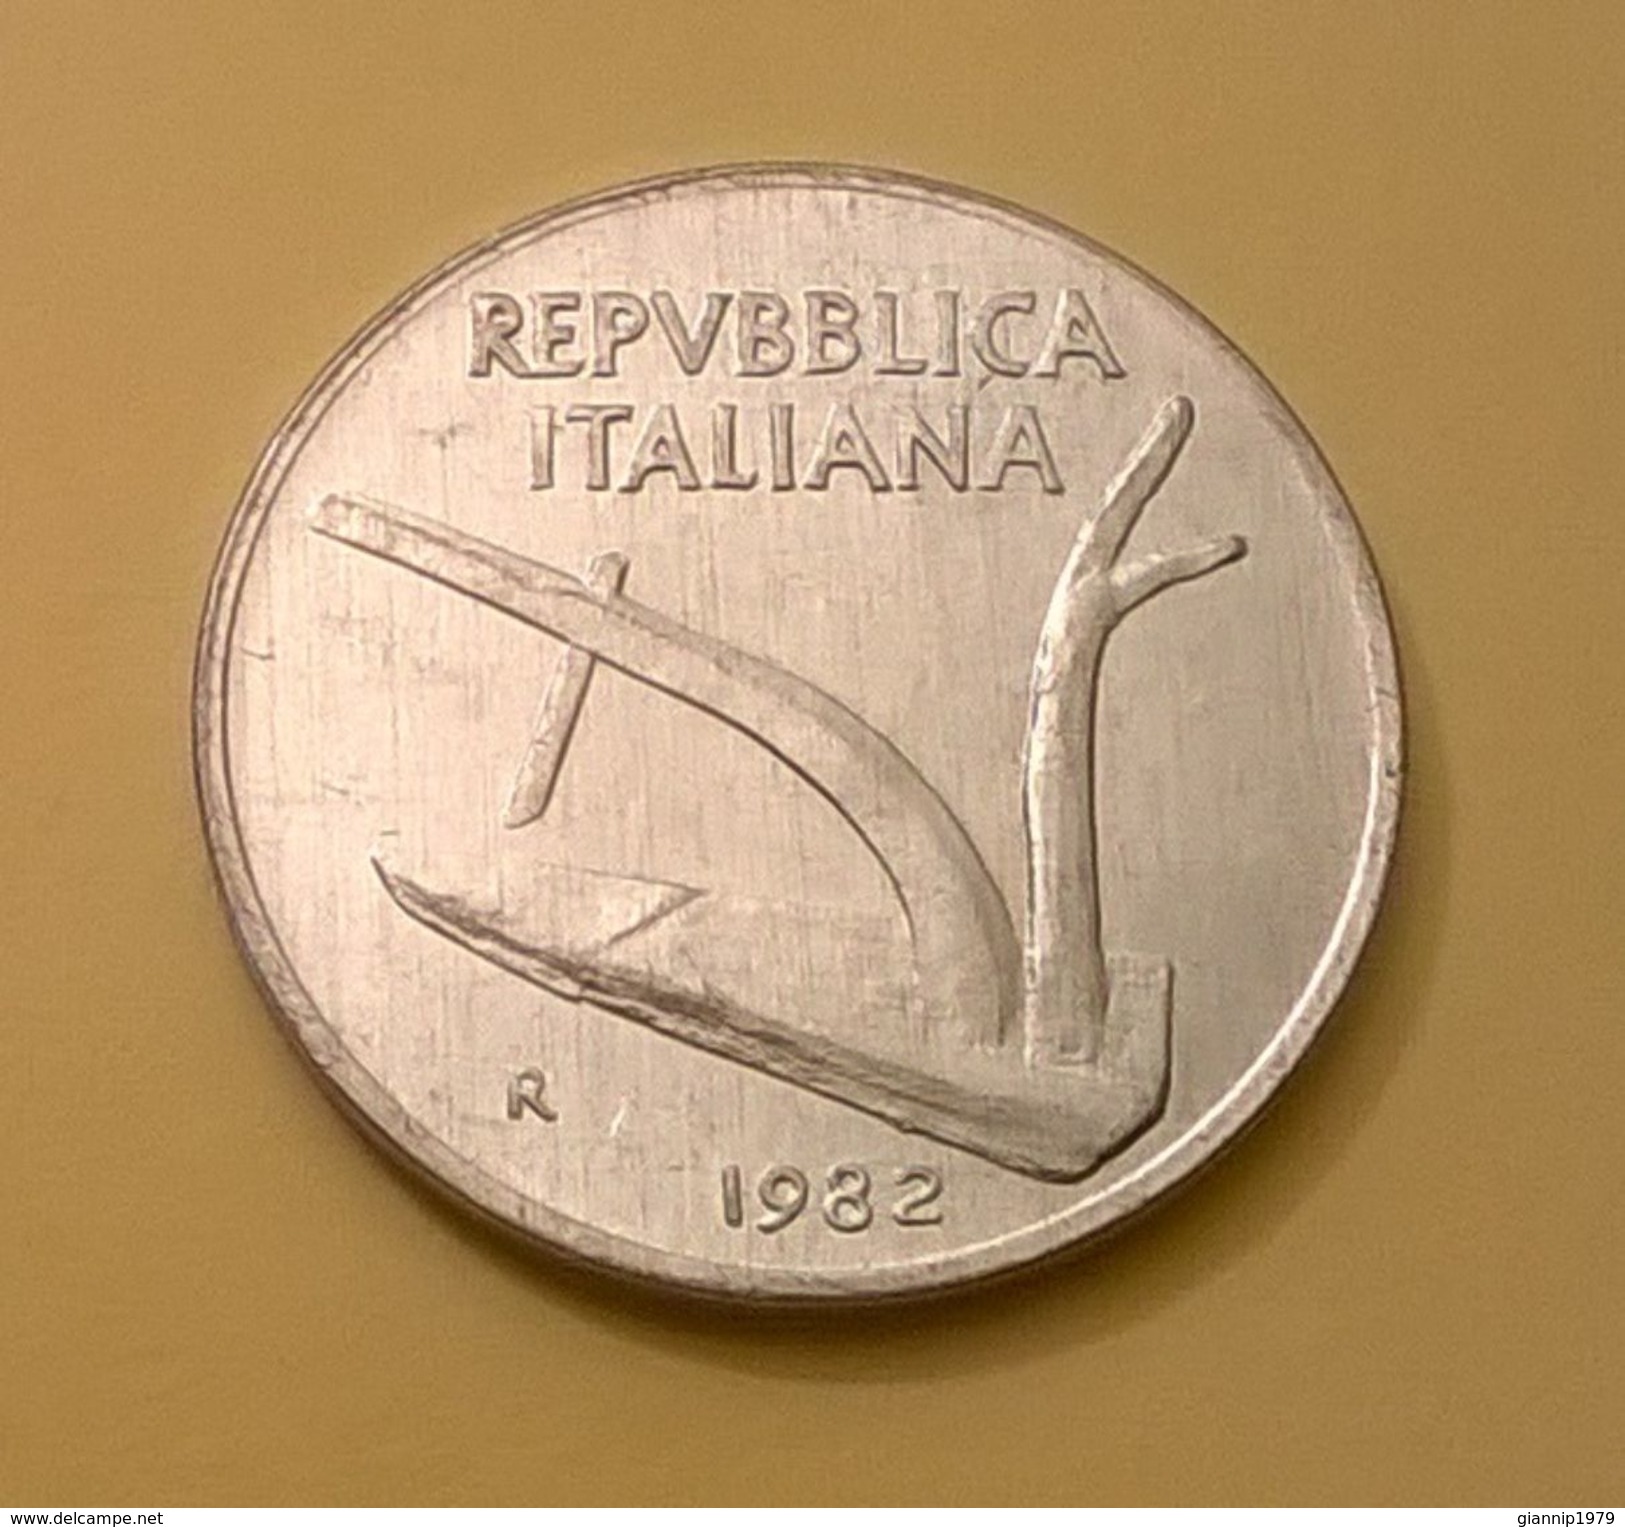 REPUBBLICA ITALIANA ITALY MONETA 10 LIRE 1982 OTTIMA CONSERVAZIONE QFDC - 10 Lire